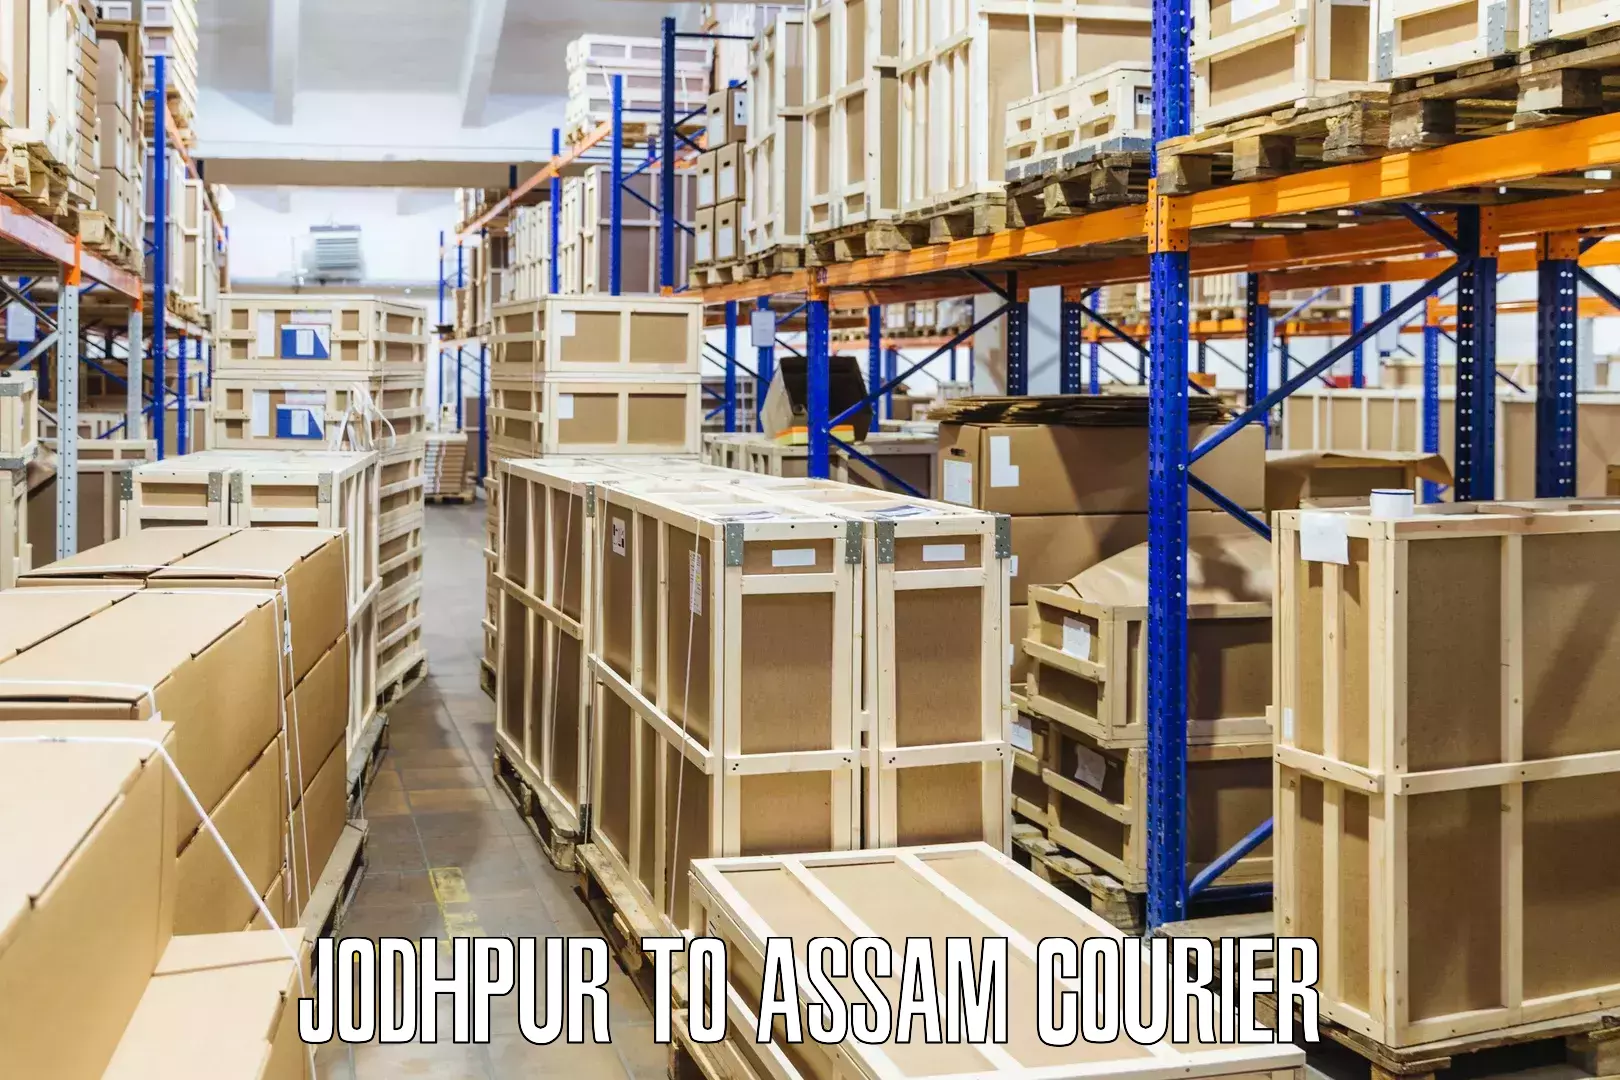 Express delivery solutions Jodhpur to Kalgachia